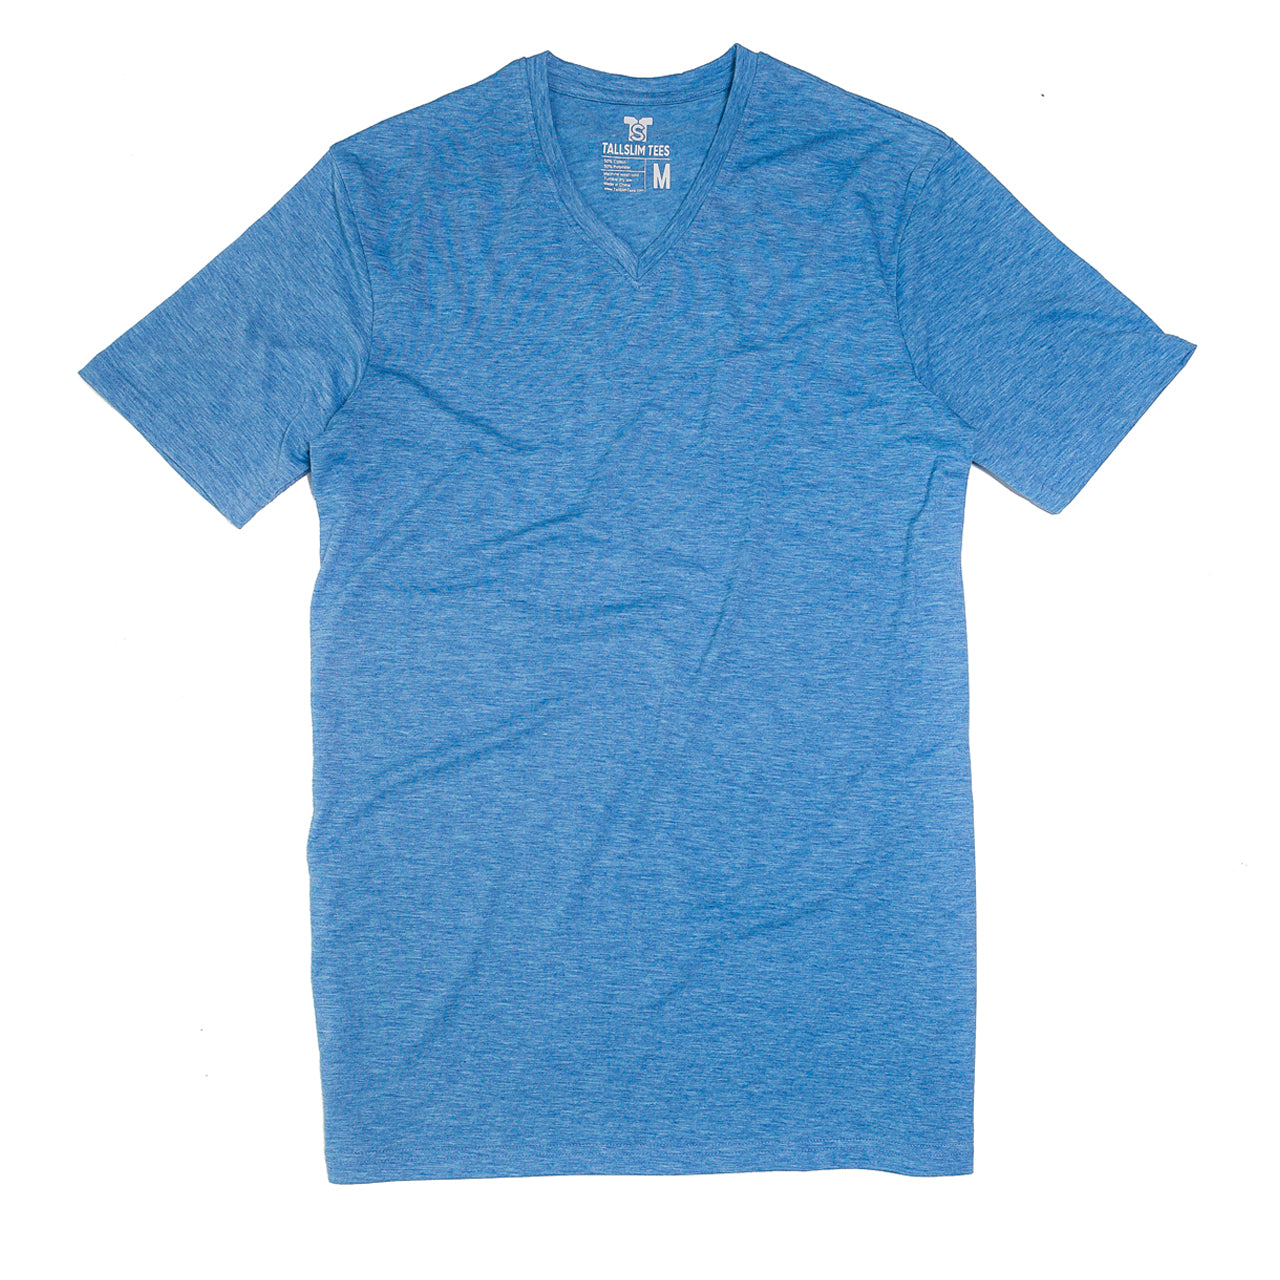 Blue V-Neck Shirt for Tall Slim Men